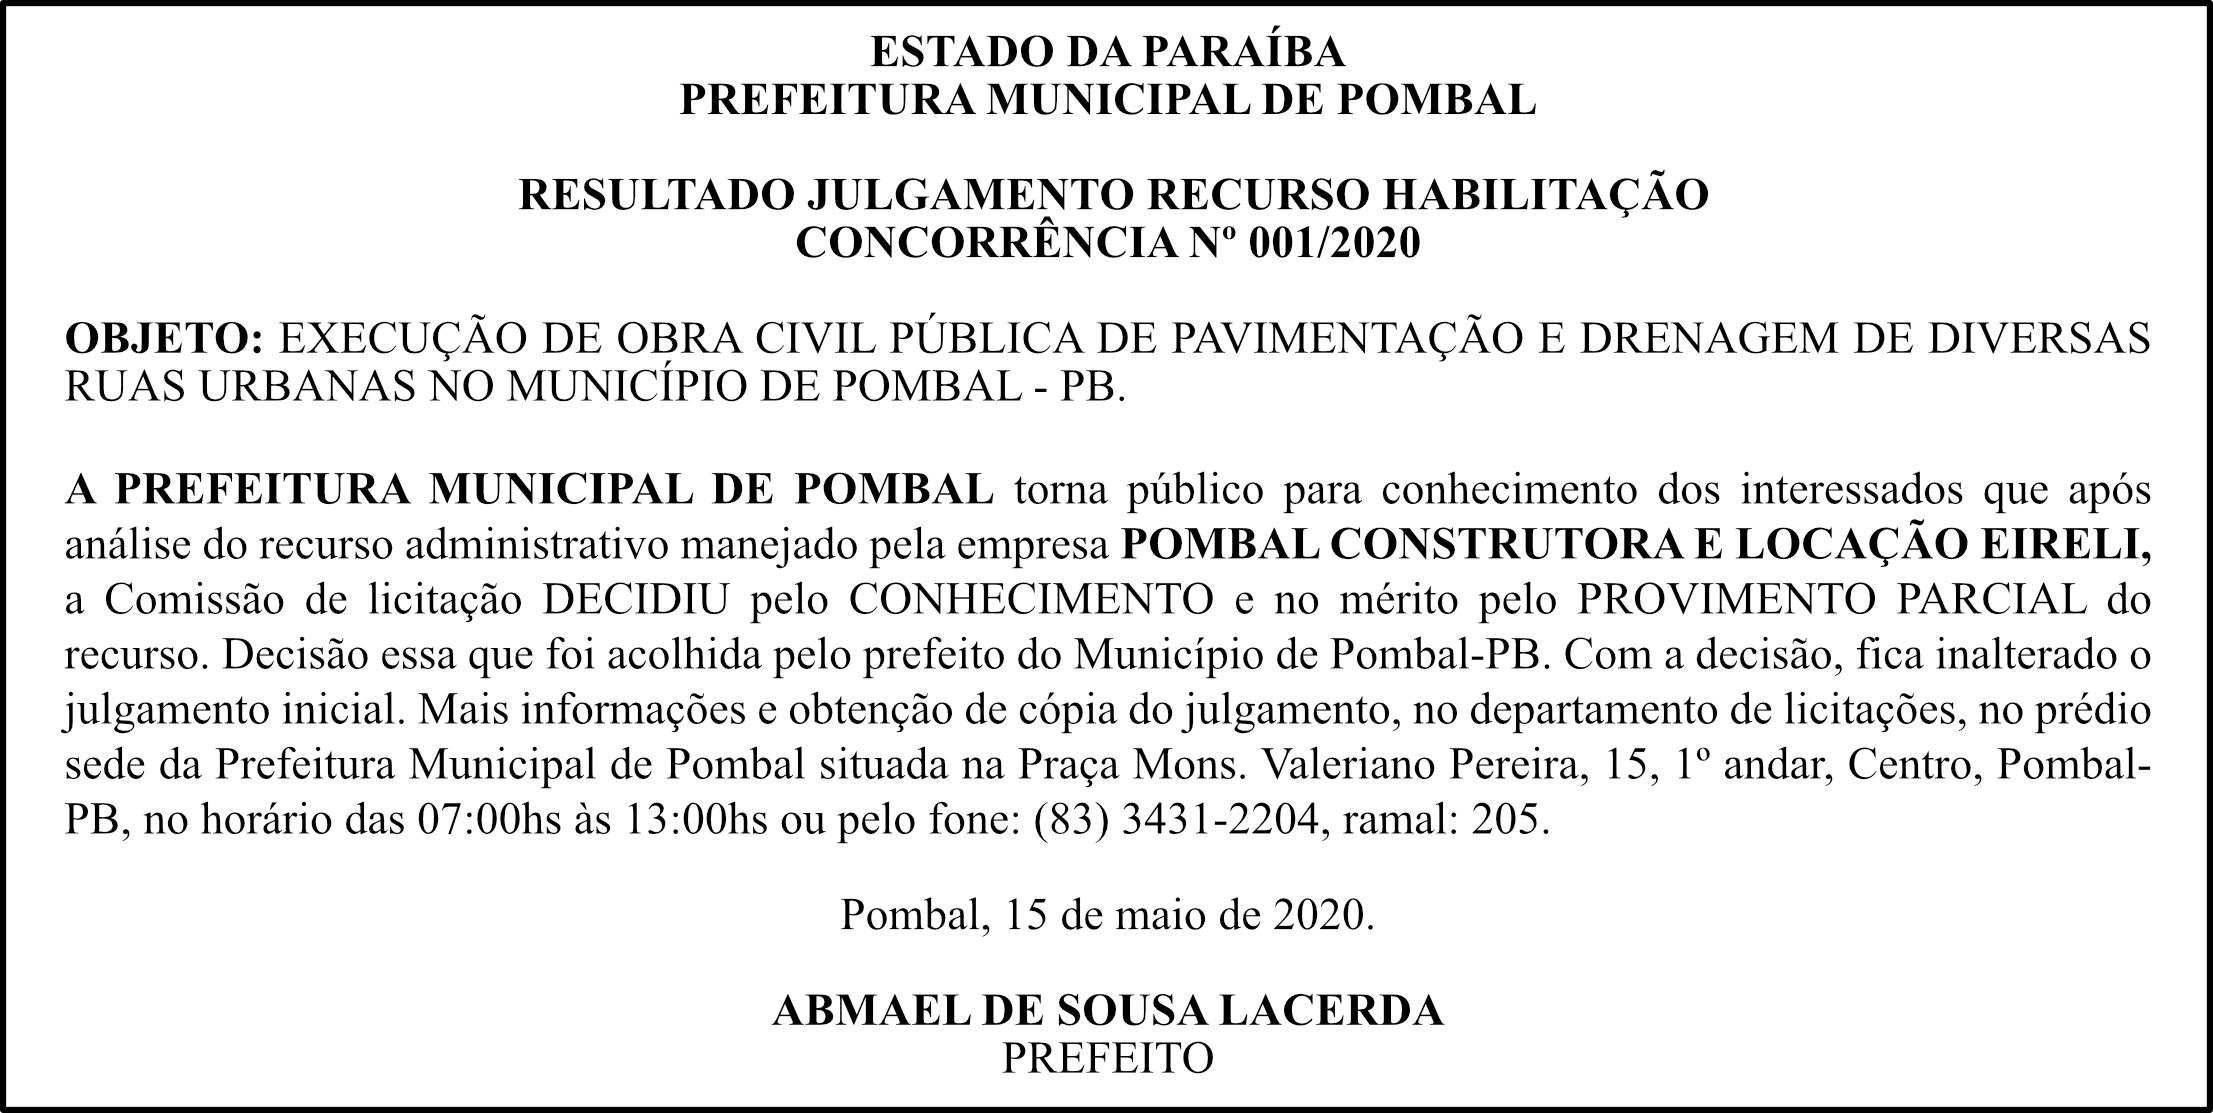 PREFEITURA MUNICIPAL DE POMBAL – RESULTADO JULGAMENTO RECURSO HABILITAÇÃO – CONCORRÊNCIA Nº 001/2020